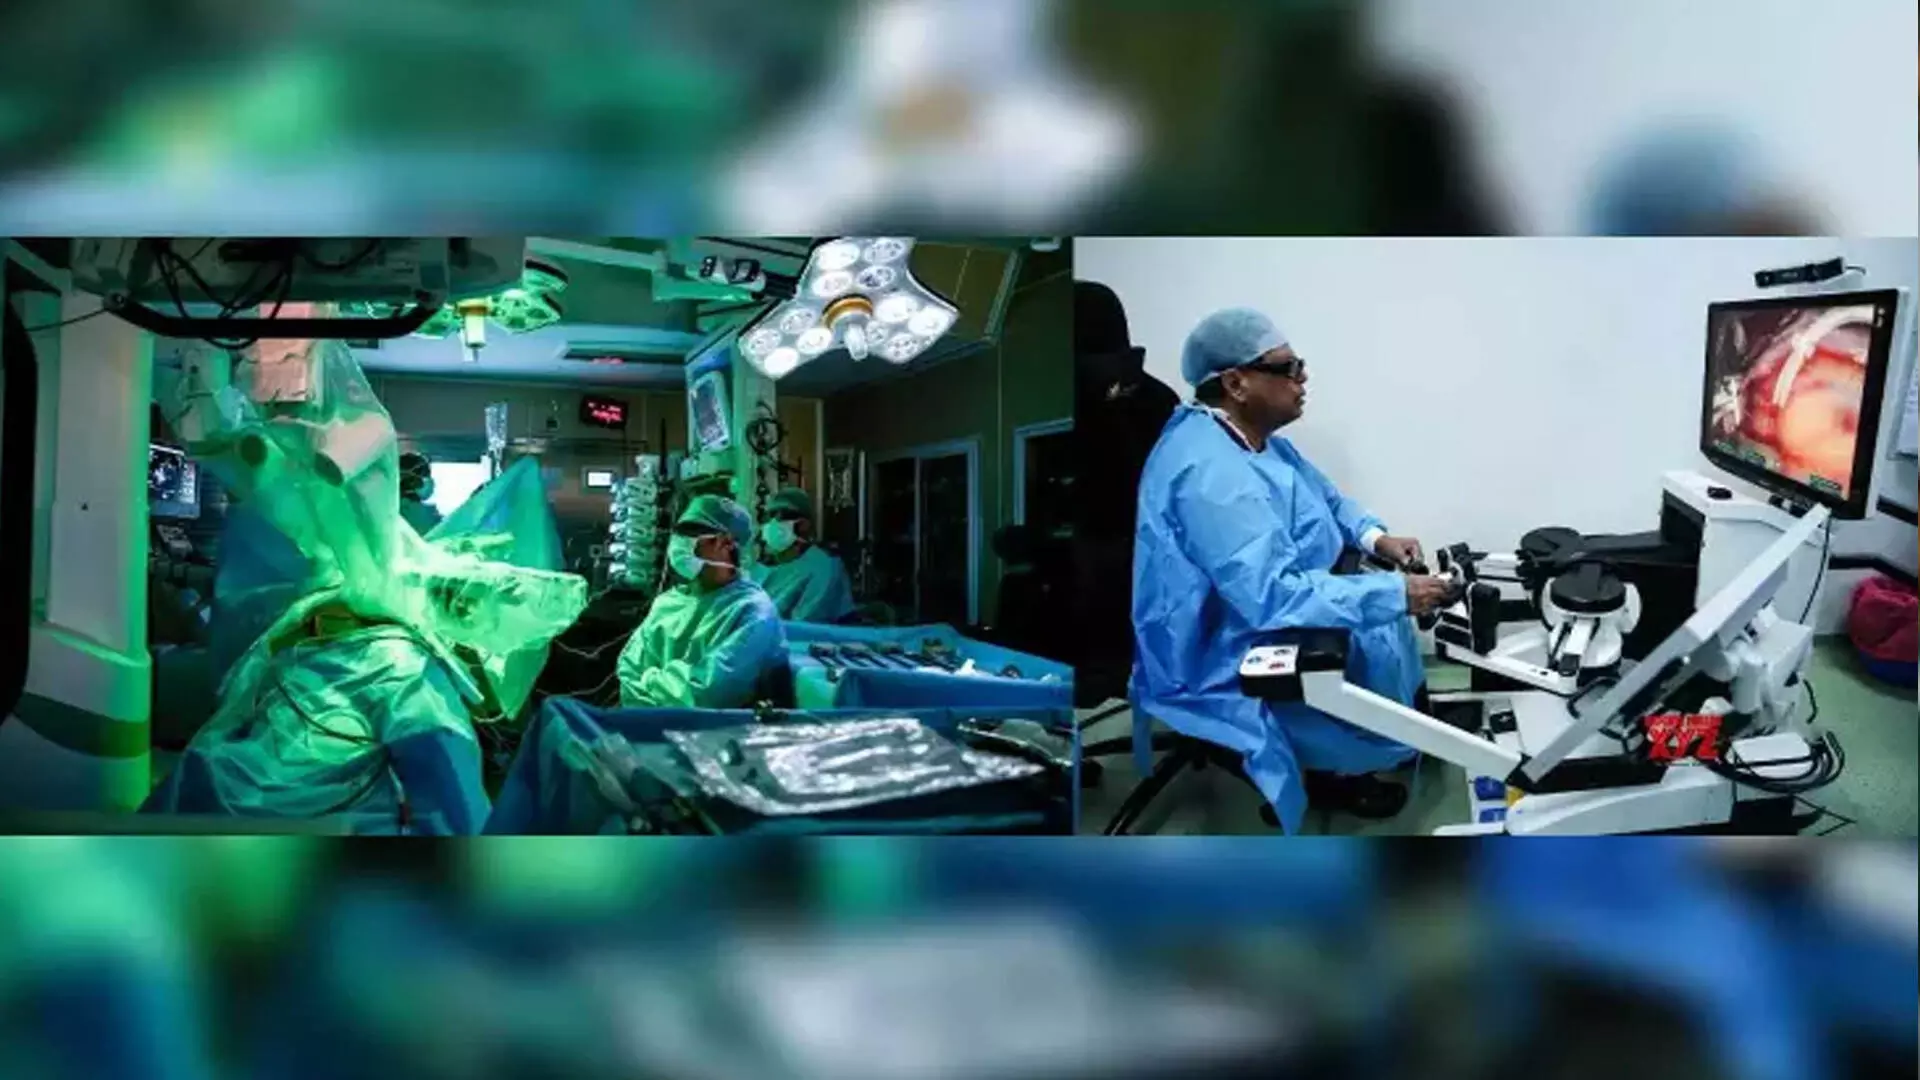 भारत में बना पहला सर्जिकल रोबोटिक सिस्टम, SSI मंत्रा, करेगा 100 कार्डियक सर्जरी